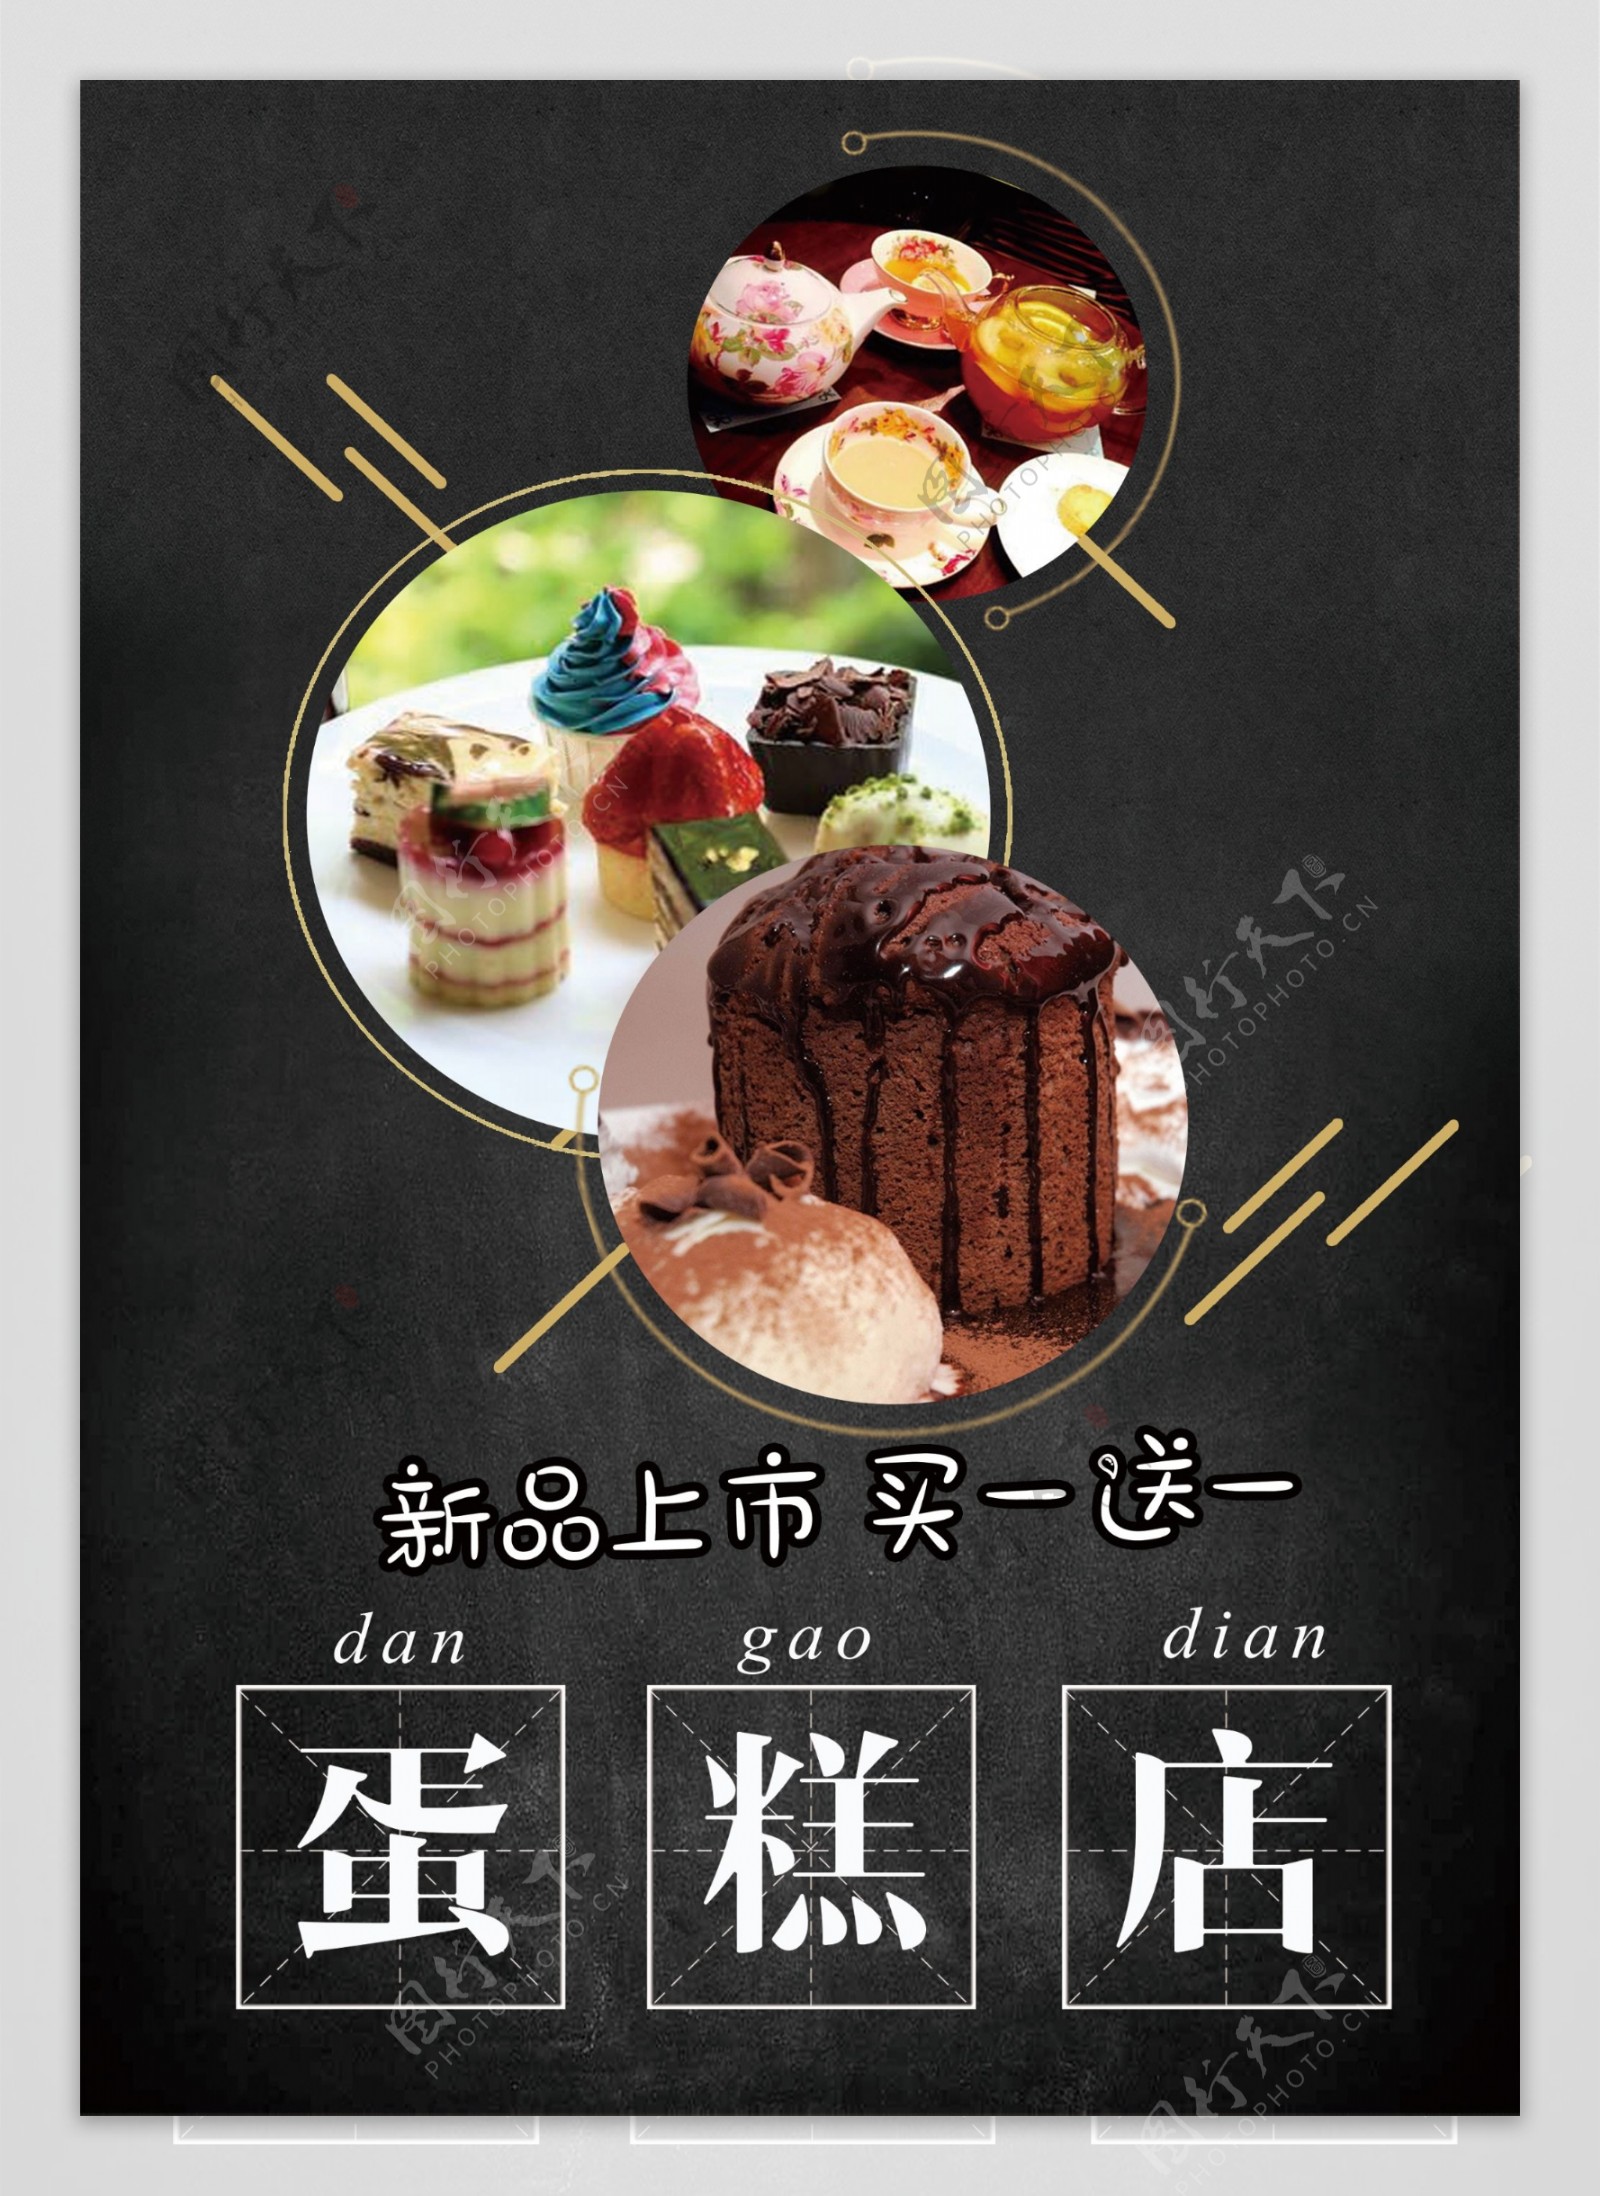 美食餐饮蛋糕店海报双面宣传单模板